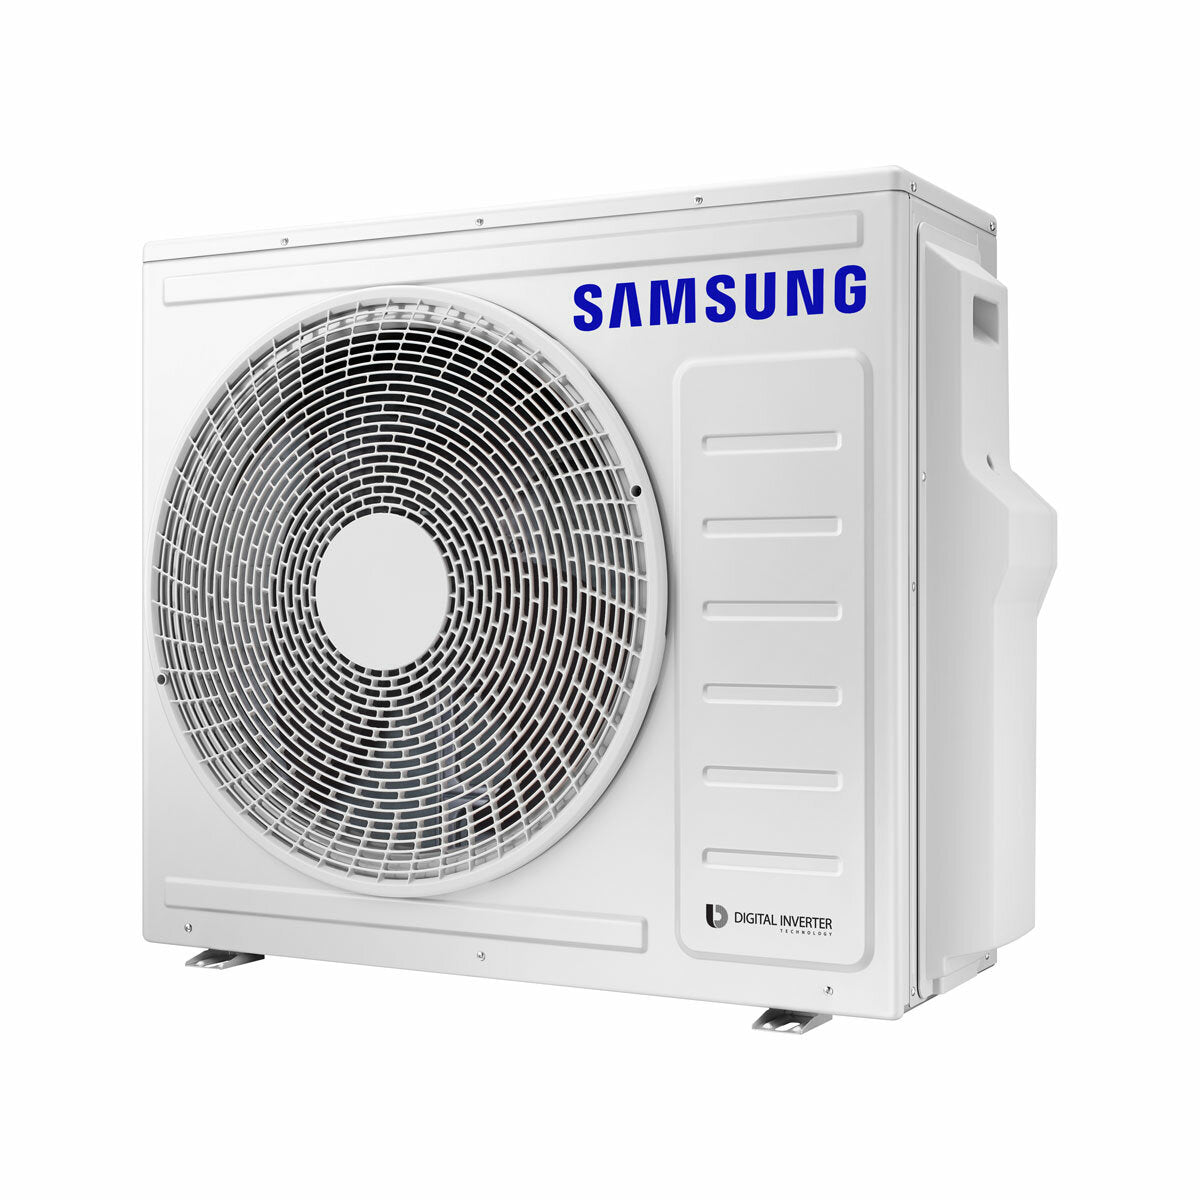 Samsung Climatiseur Windfree 4 voies trial split 12000 + 12000 + 12000 BTU Inverter A++ Unité extérieure 8,0 kW